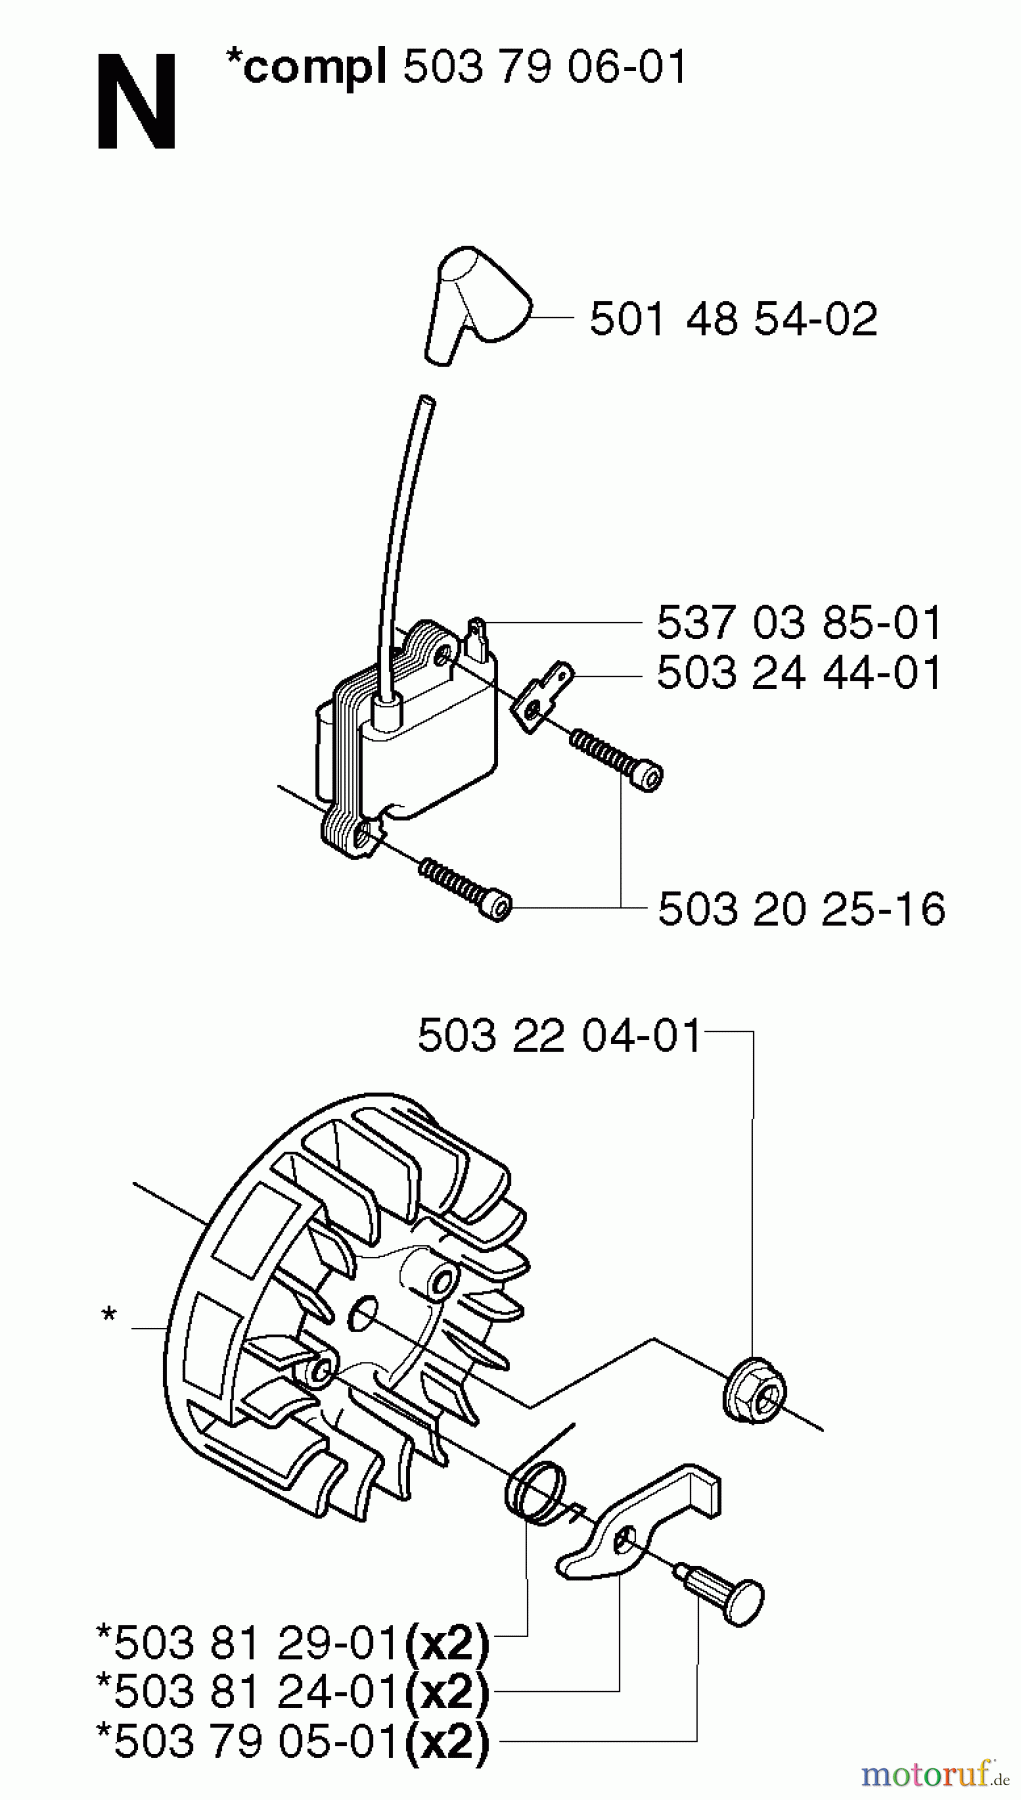  Jonsered Motorsensen, Trimmer GR2036 - Jonsered String/Brush Trimmer (2002-08) IGNITION SYSTEM